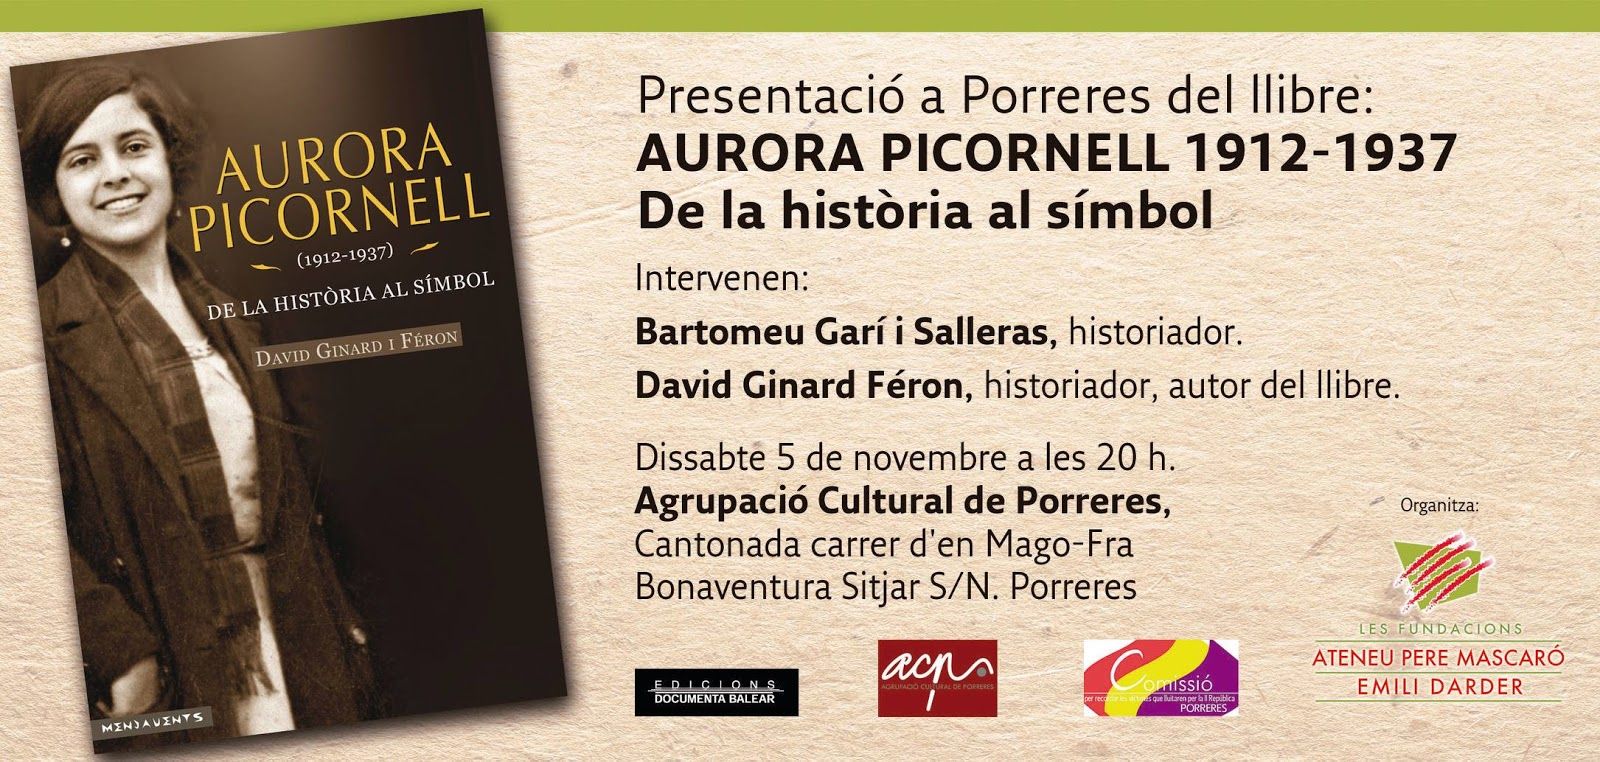 Presentació del llibre AURORA PICORNELL 1912-1937. De LA HISTÒRIA AL SÍMBOL, de David Ginard.